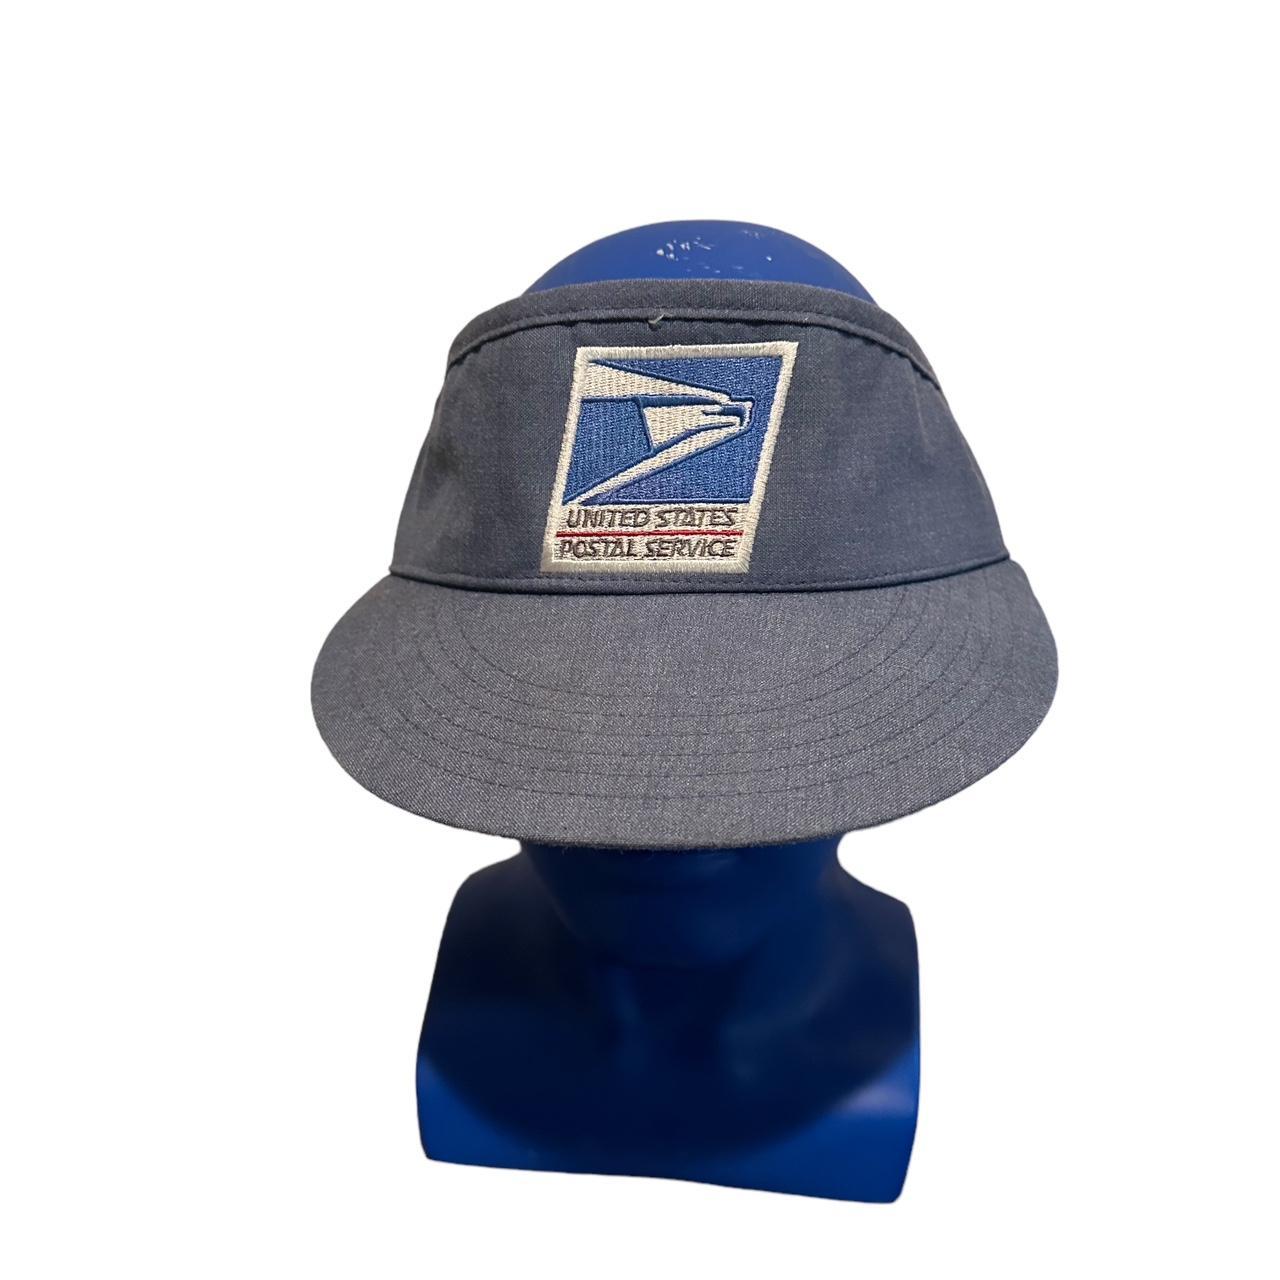 POST OFFICE Vintage VISOR Hat Snapback USPS Postal